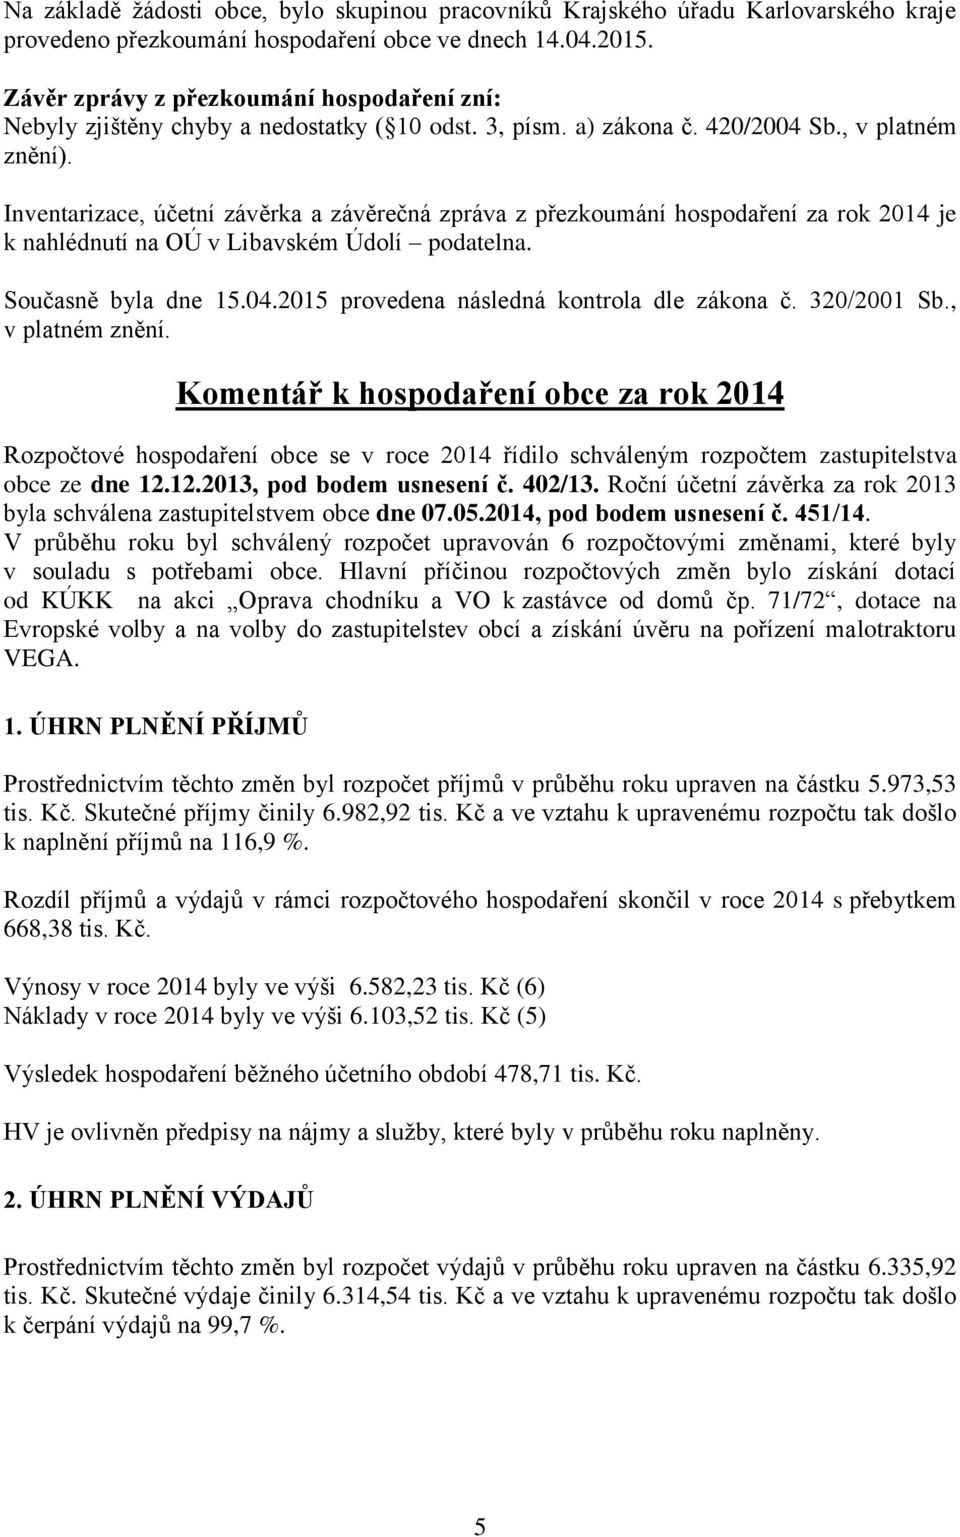 Inventarizace, účetní závěrka a závěrečná zpráva z přezkoumání hospodaření za rok 2014 je k nahlédnutí na OÚ v Libavském Údolí podatelna. Současně byla dne 15.04.